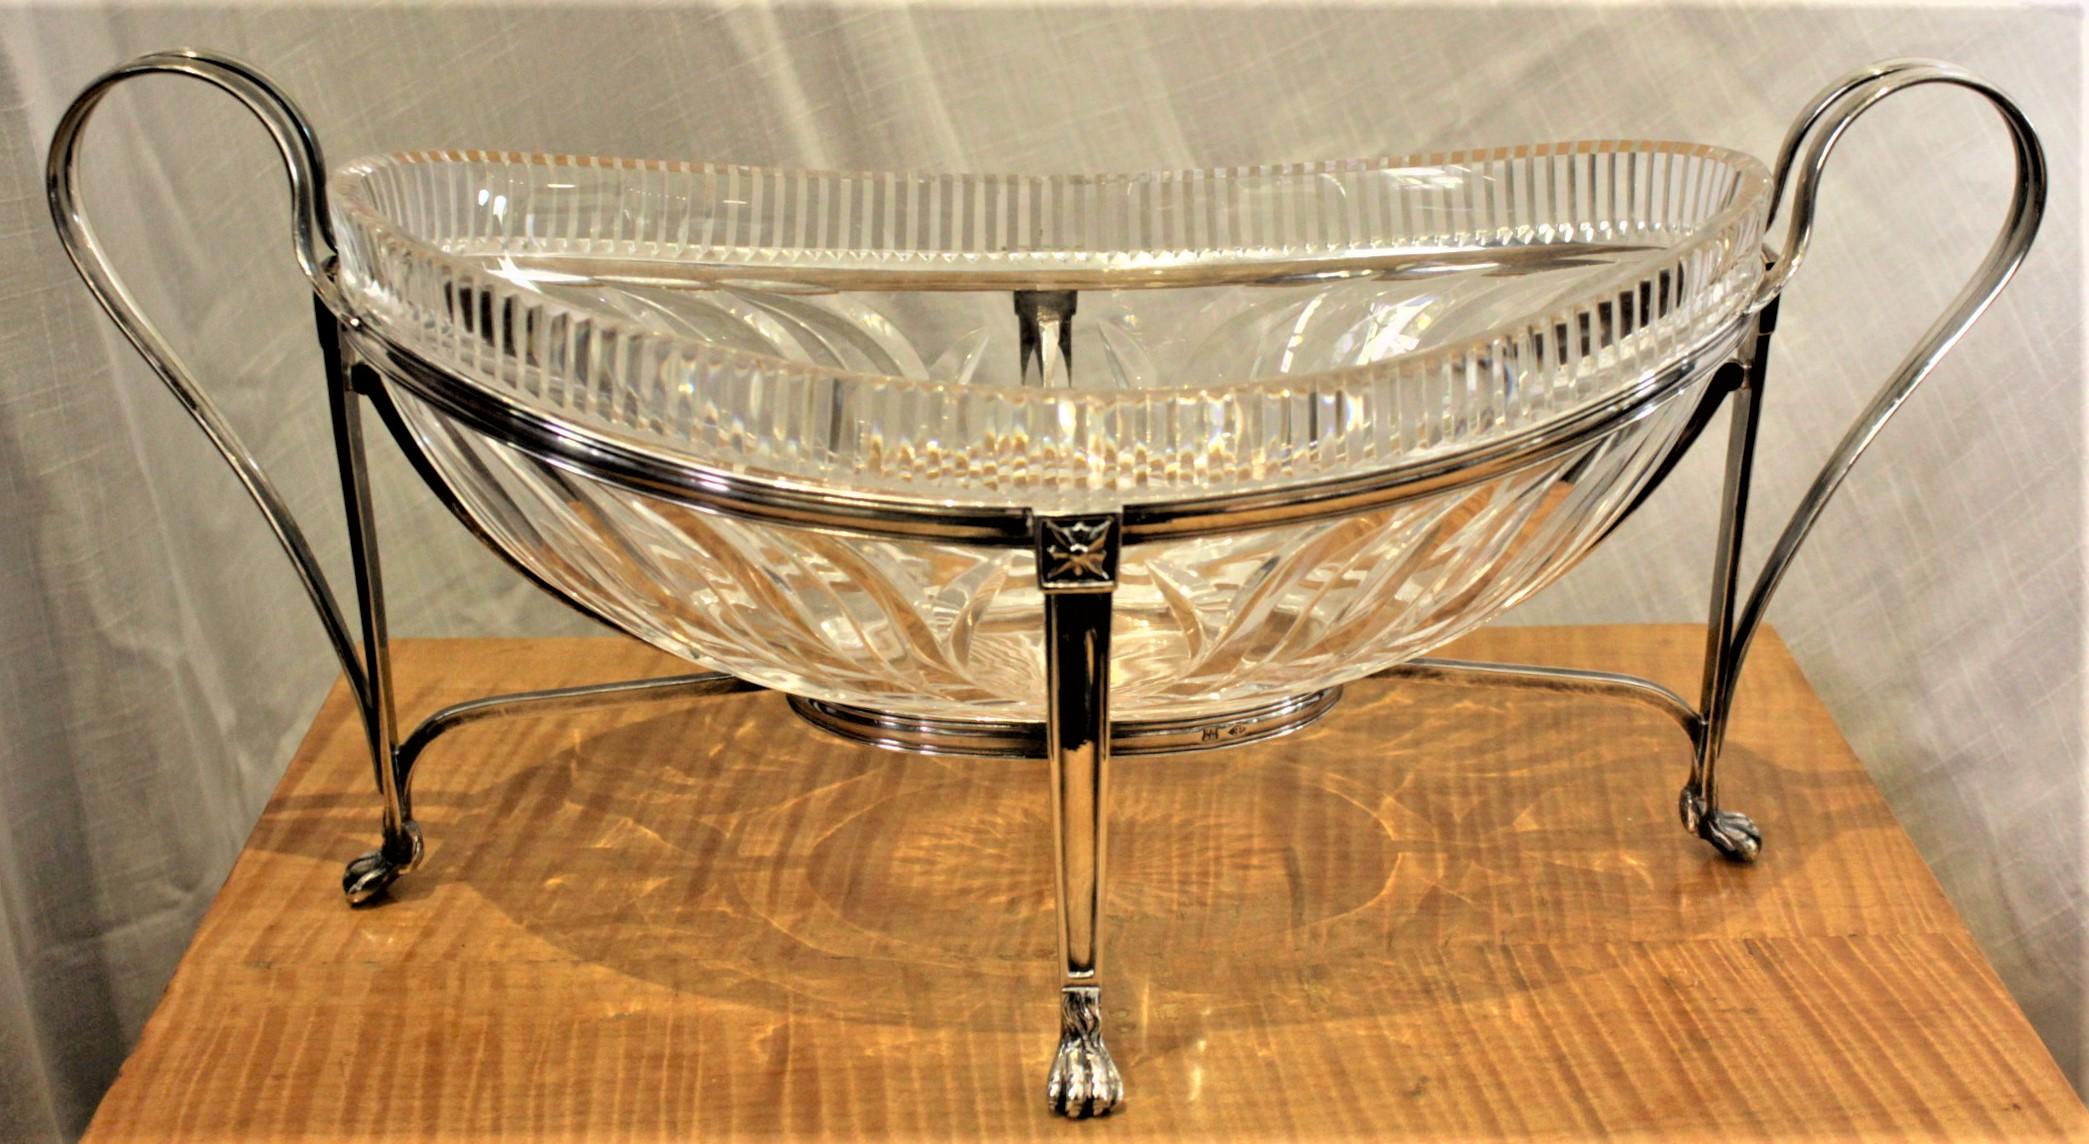 Cet ancien bol de centre de table en cristal taillé et plaqué argent est poinçonné, mais le fabricant est inconnu. On présume qu'il est d'origine européenne et qu'il a été fabriqué vers 1880. Le bol ovale en cristal est très joliment facetté à